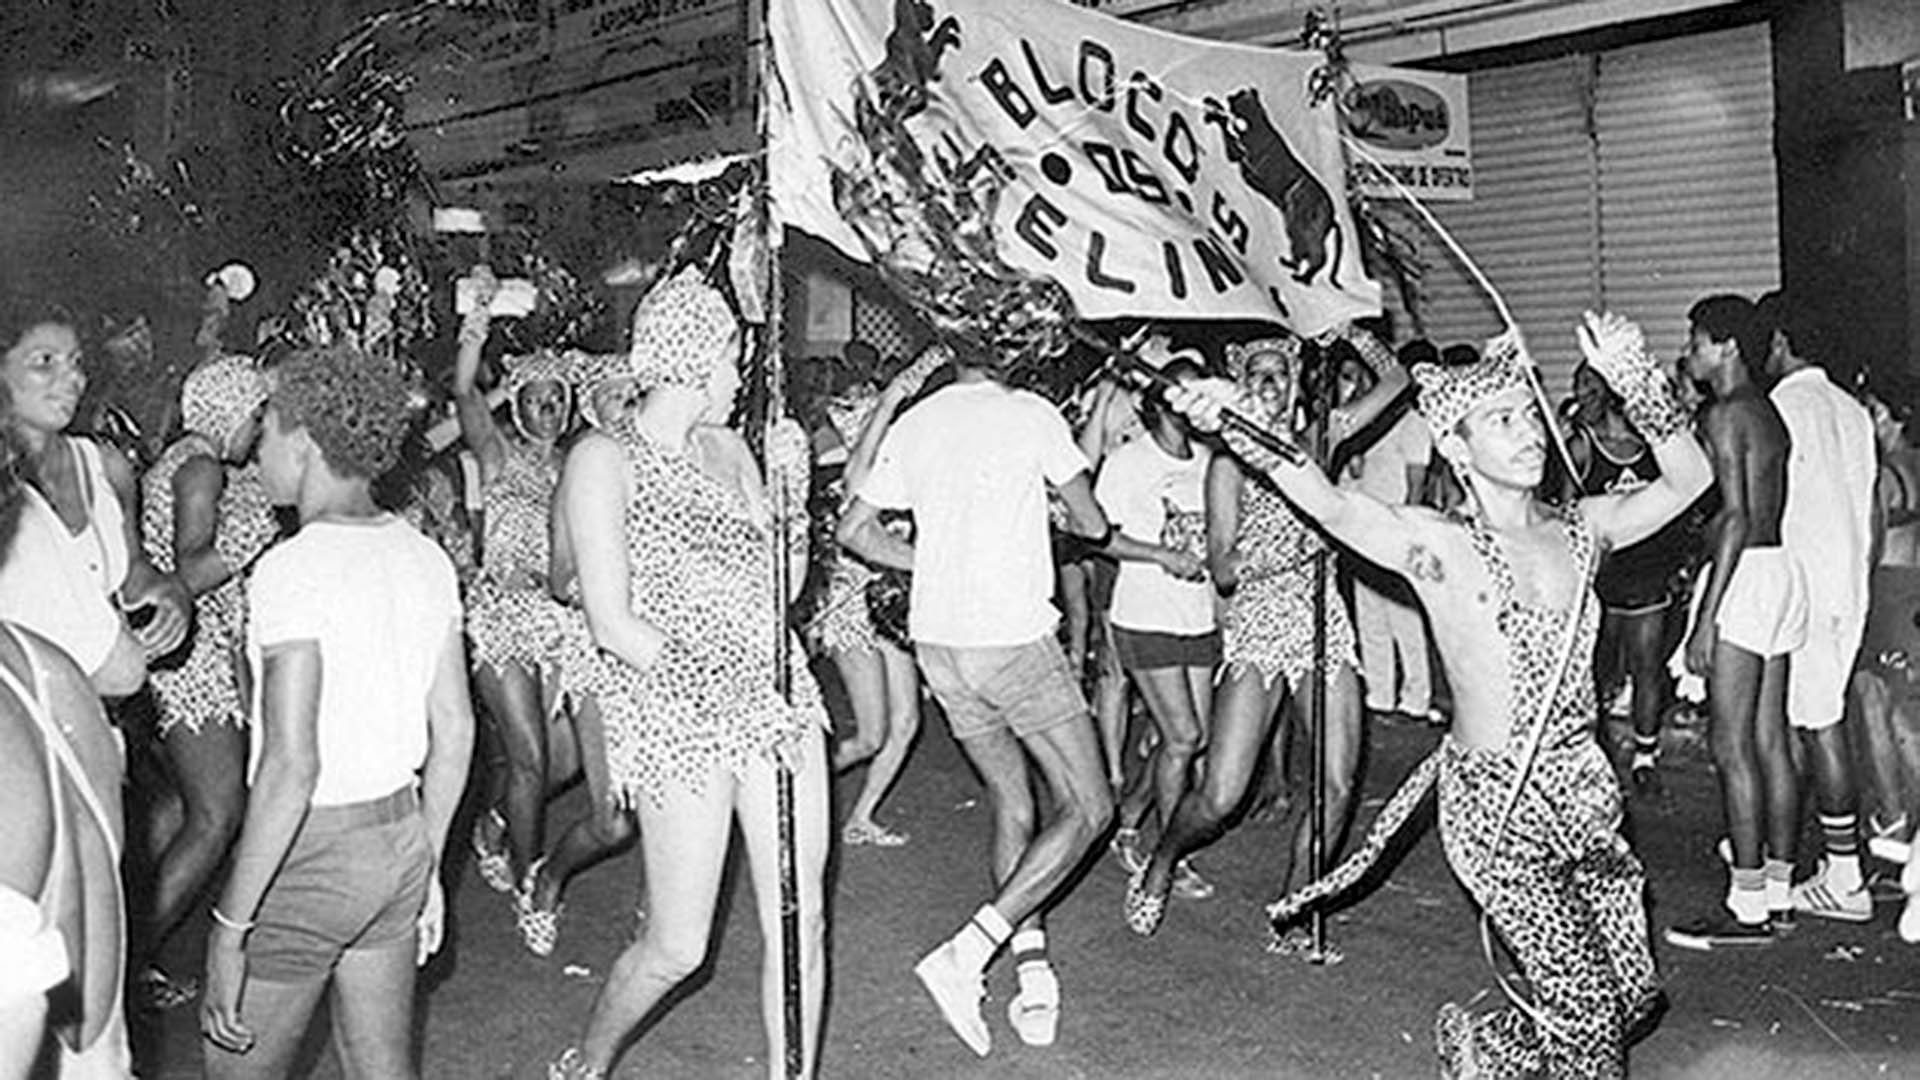 1983 - Bloco "Os Felinos", bairro Santo Antônio - Vitória